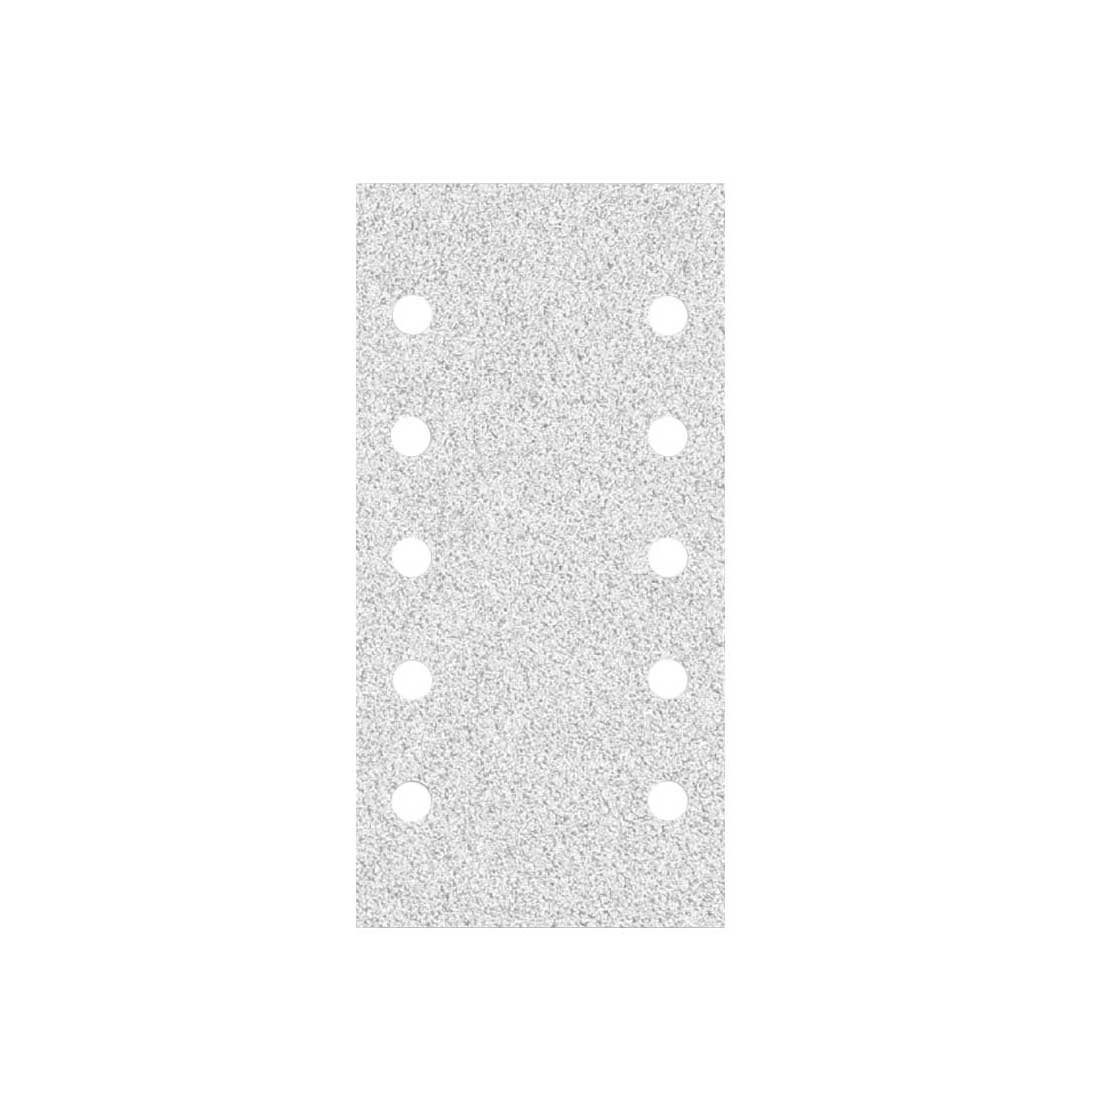 MioTools Schleifpapier 230 x 50 Stk., 10-Loch Klett-Schleifblätter 115 K100 mm Schwingschleifer, Normalkorund, für